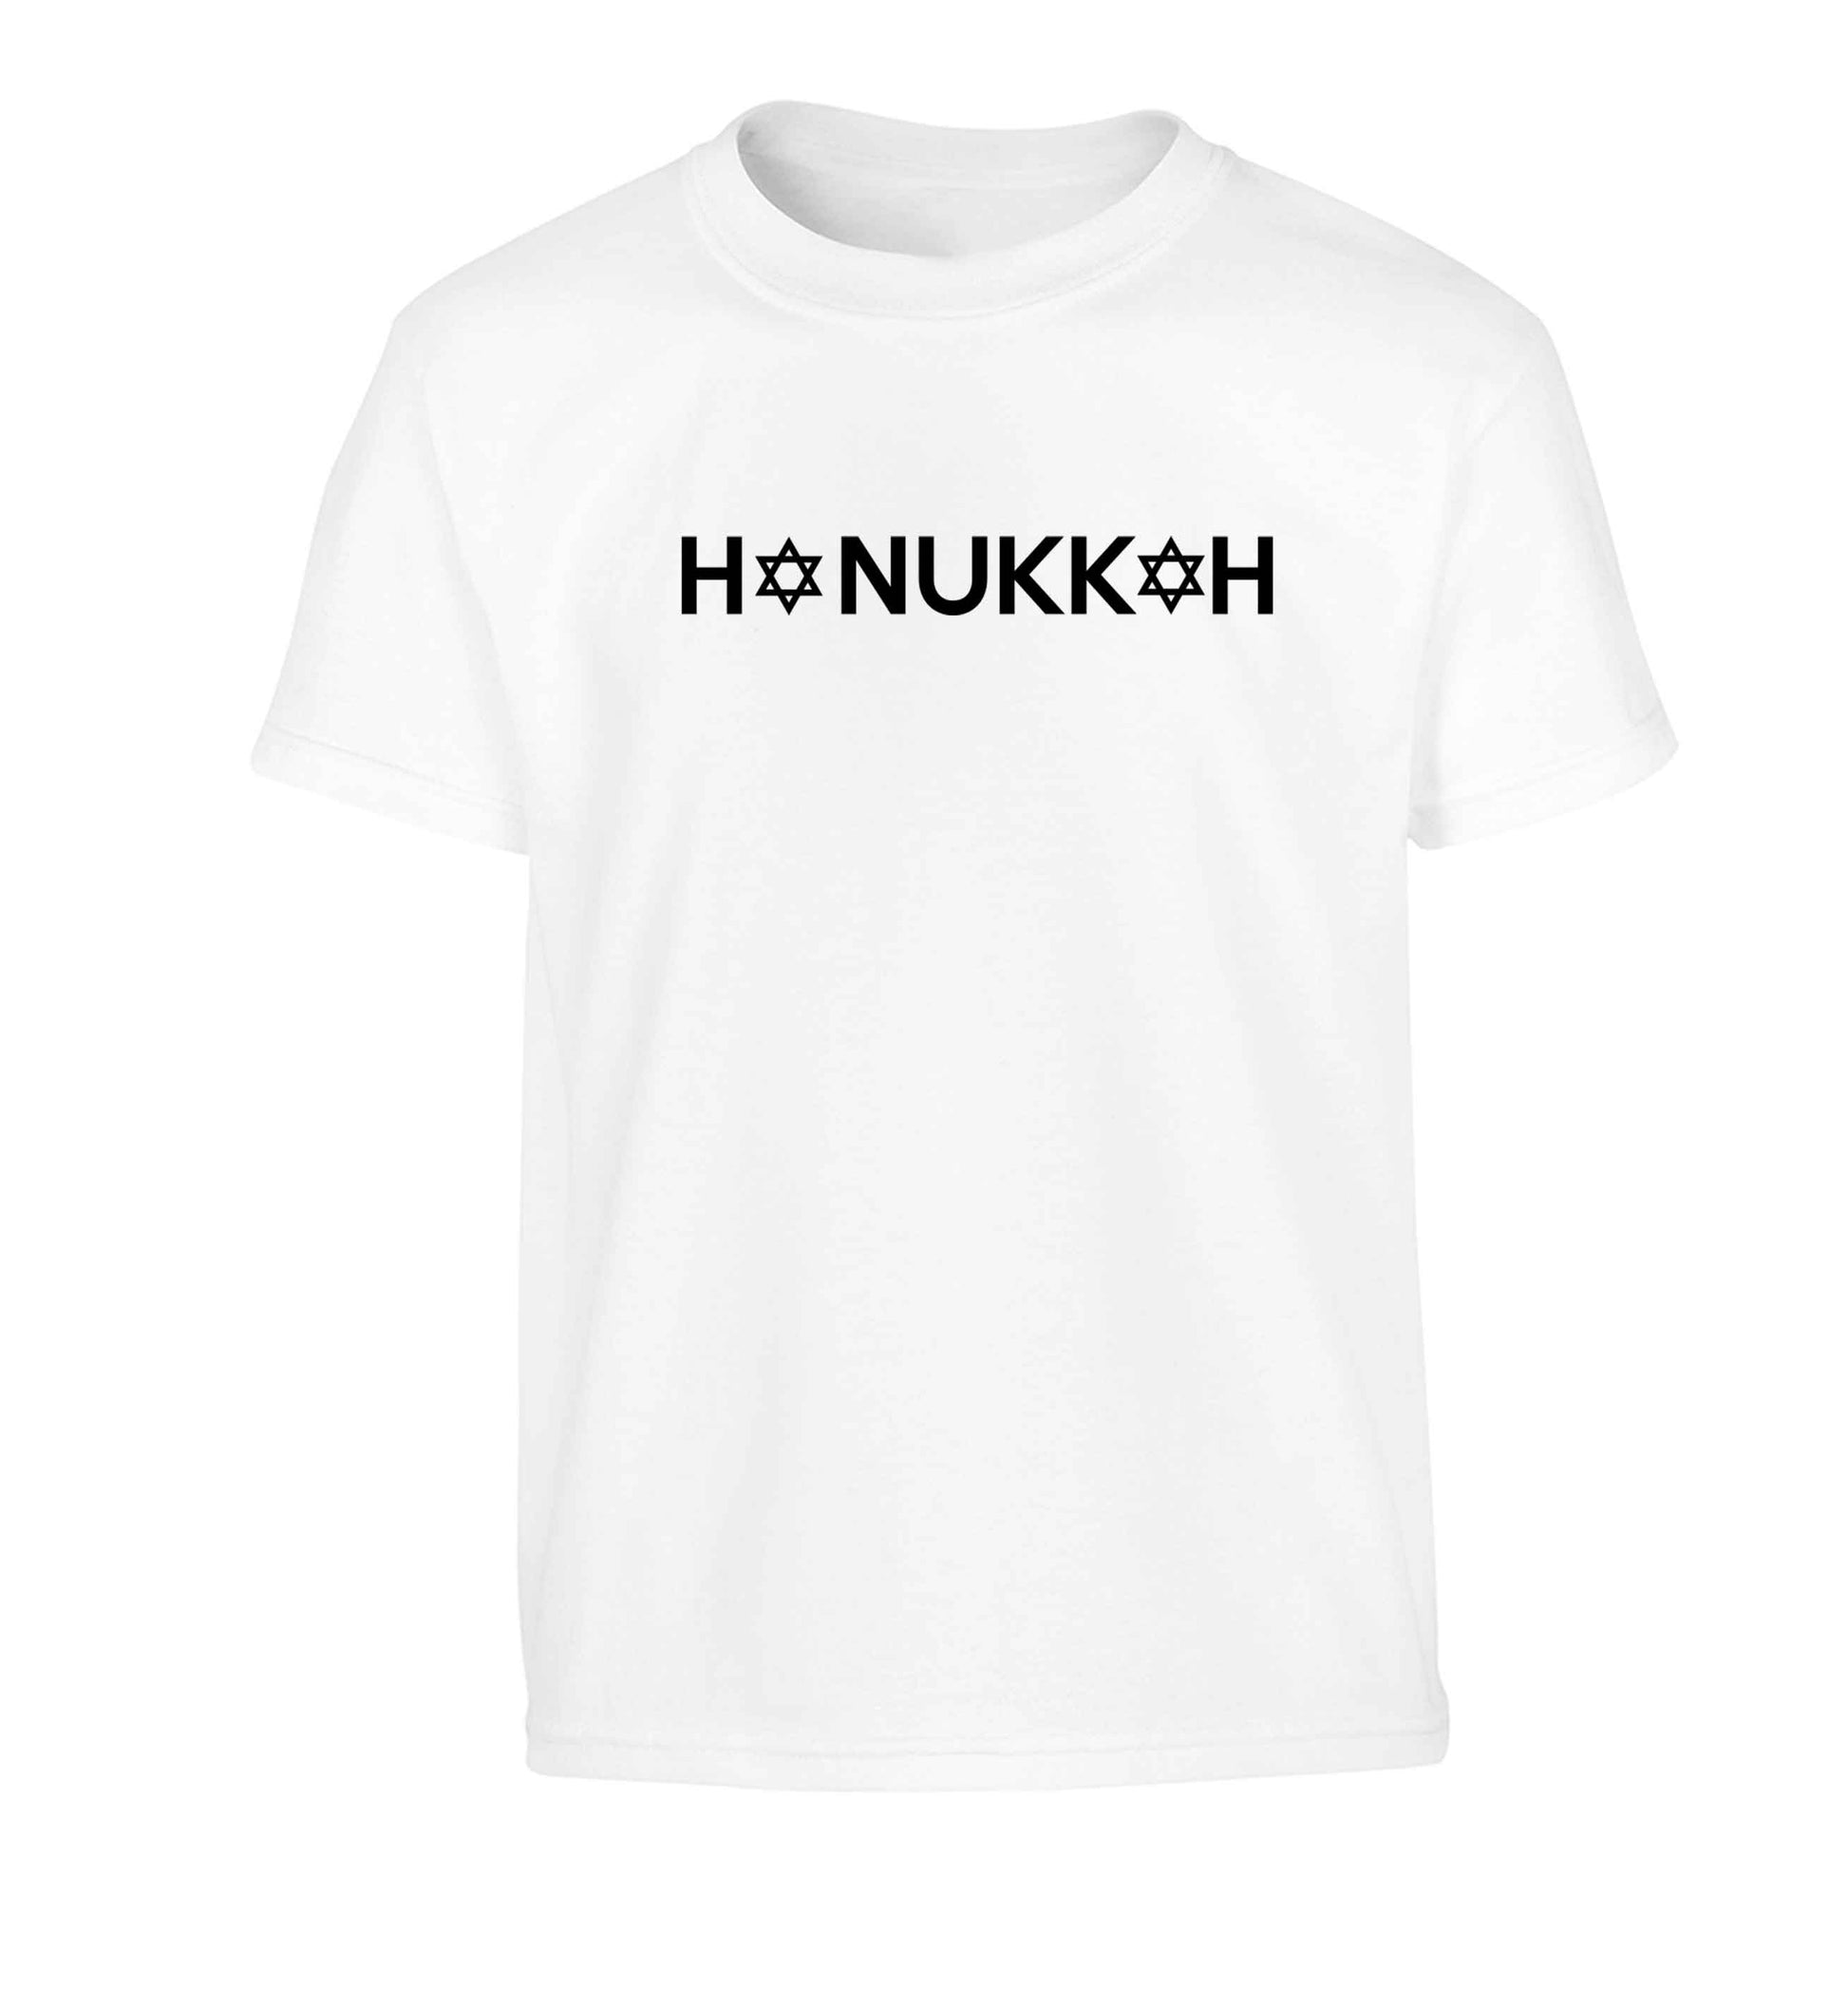 Hanukkah star of david Children's white Tshirt 12-13 Years